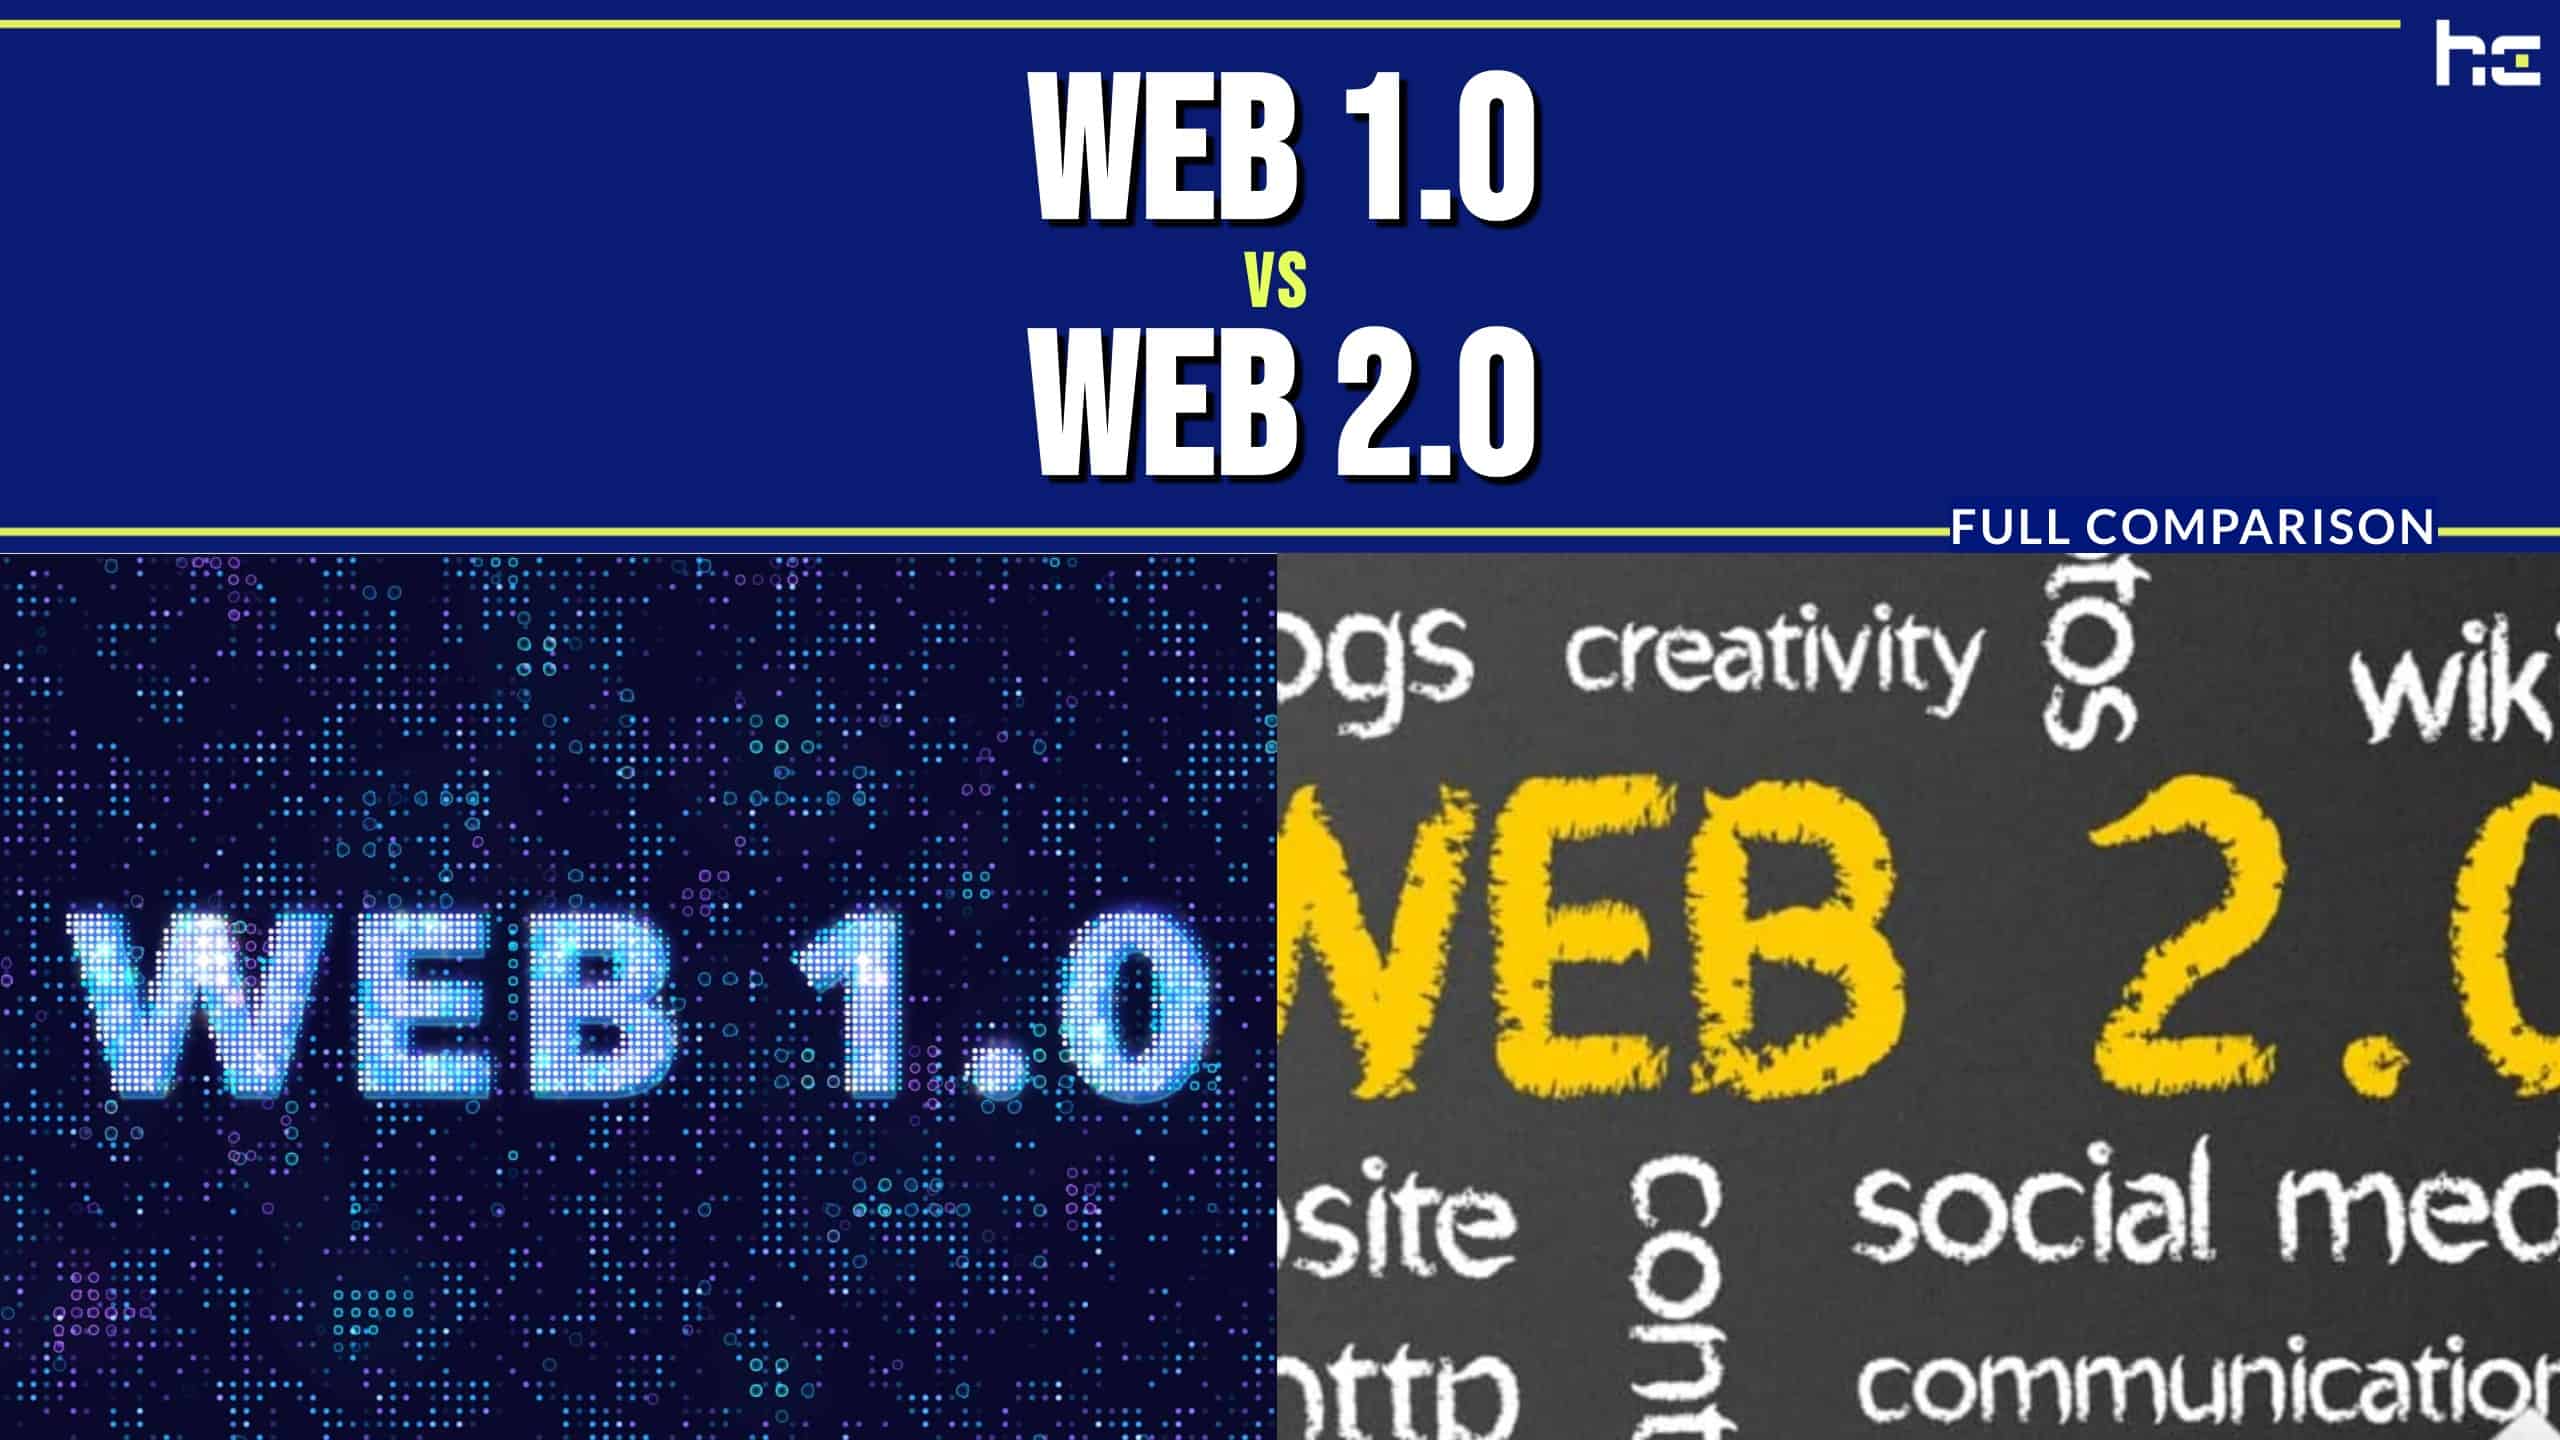 Web 1.0 vs Web 2.0